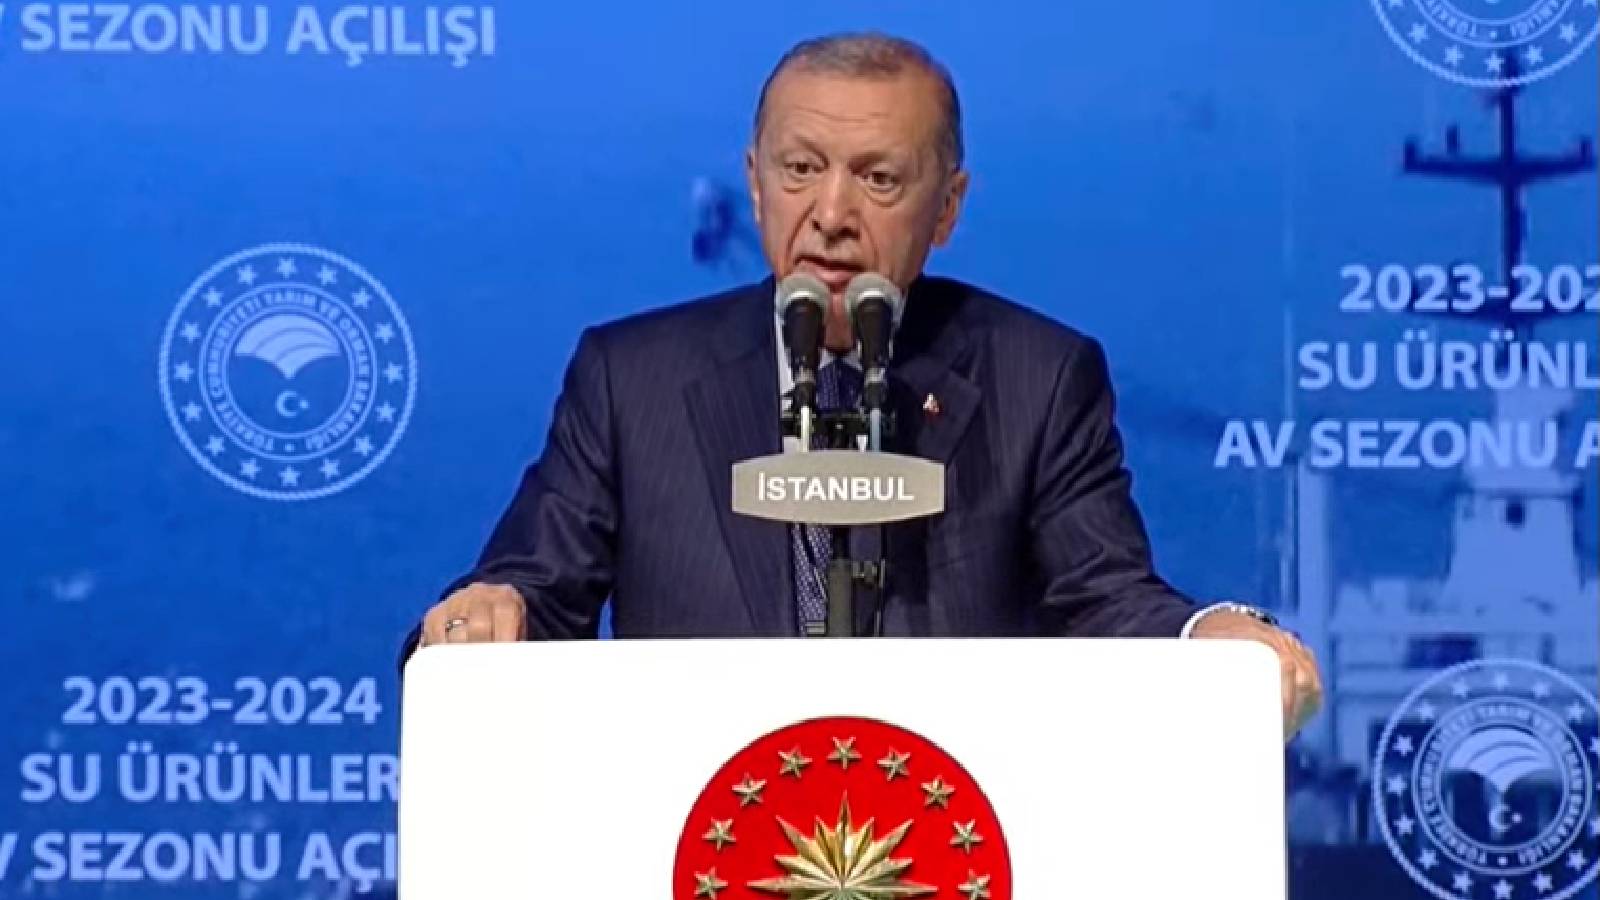 Erdoğan, av dönemi açılışında: Balıkçılık dalına 2004'ten beri ÖTV'siz yakıt veriyoruz